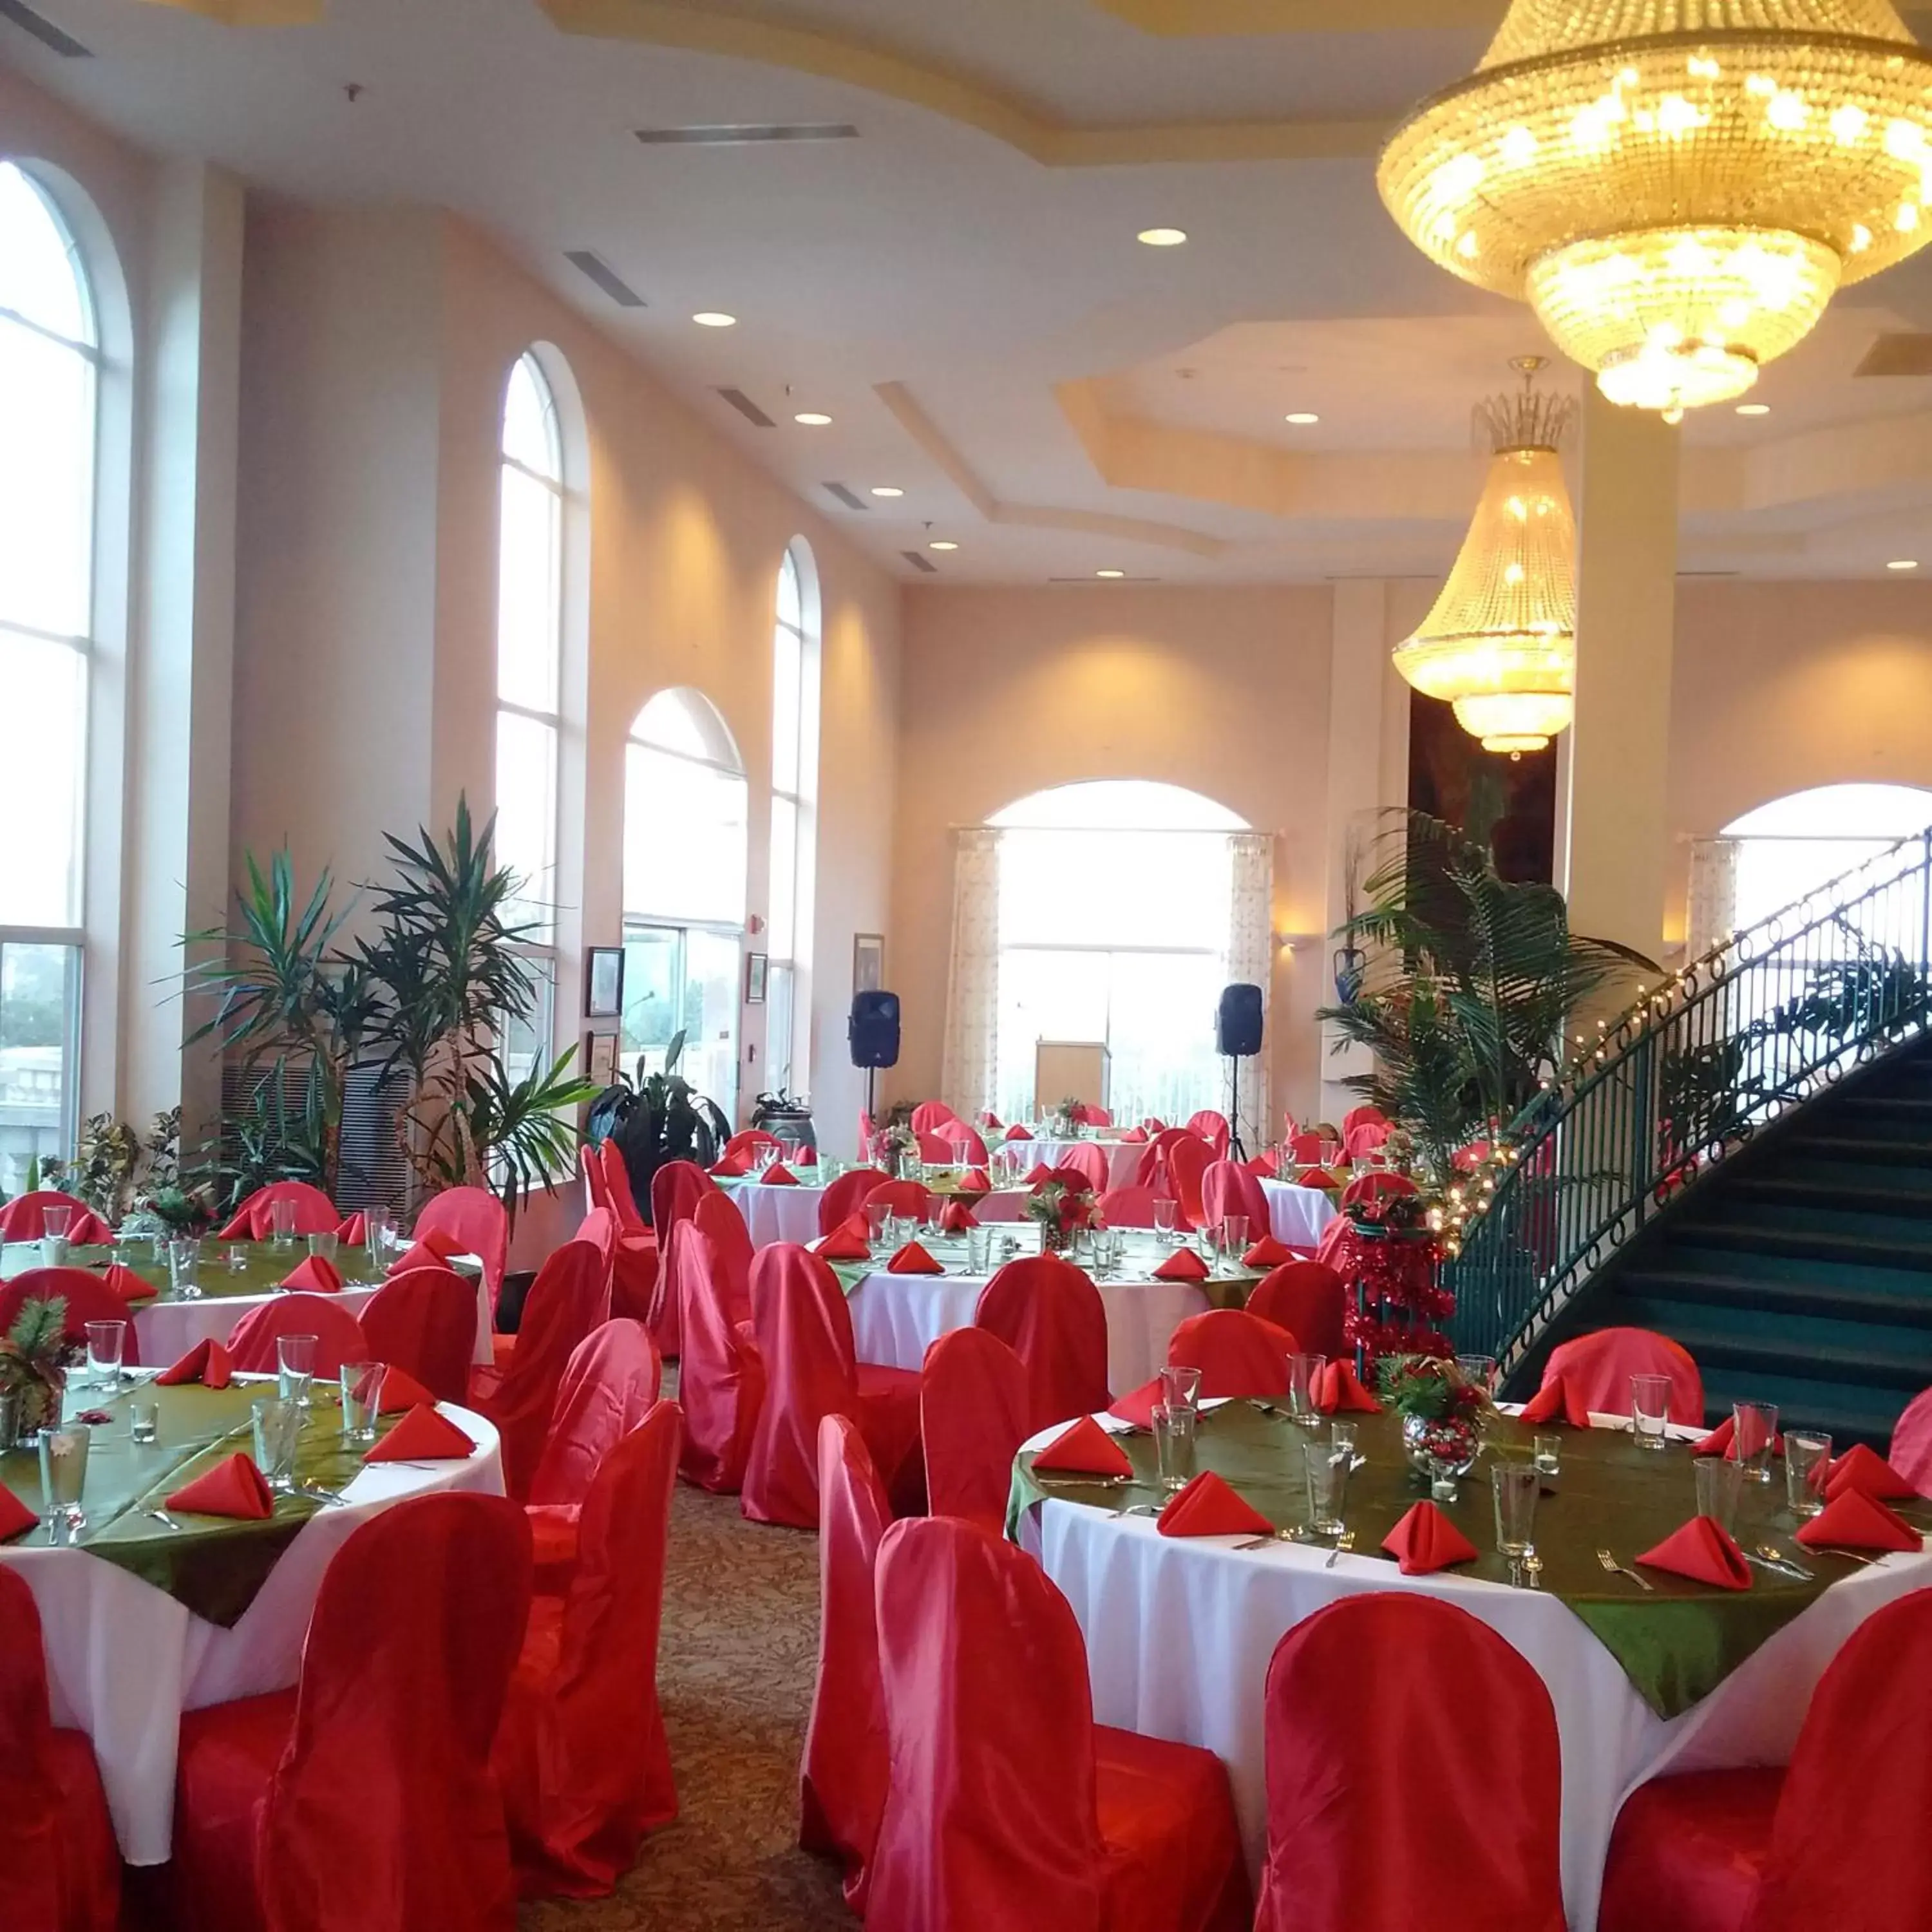 Banquet/Function facilities, Banquet Facilities in Forest Villas Hotel